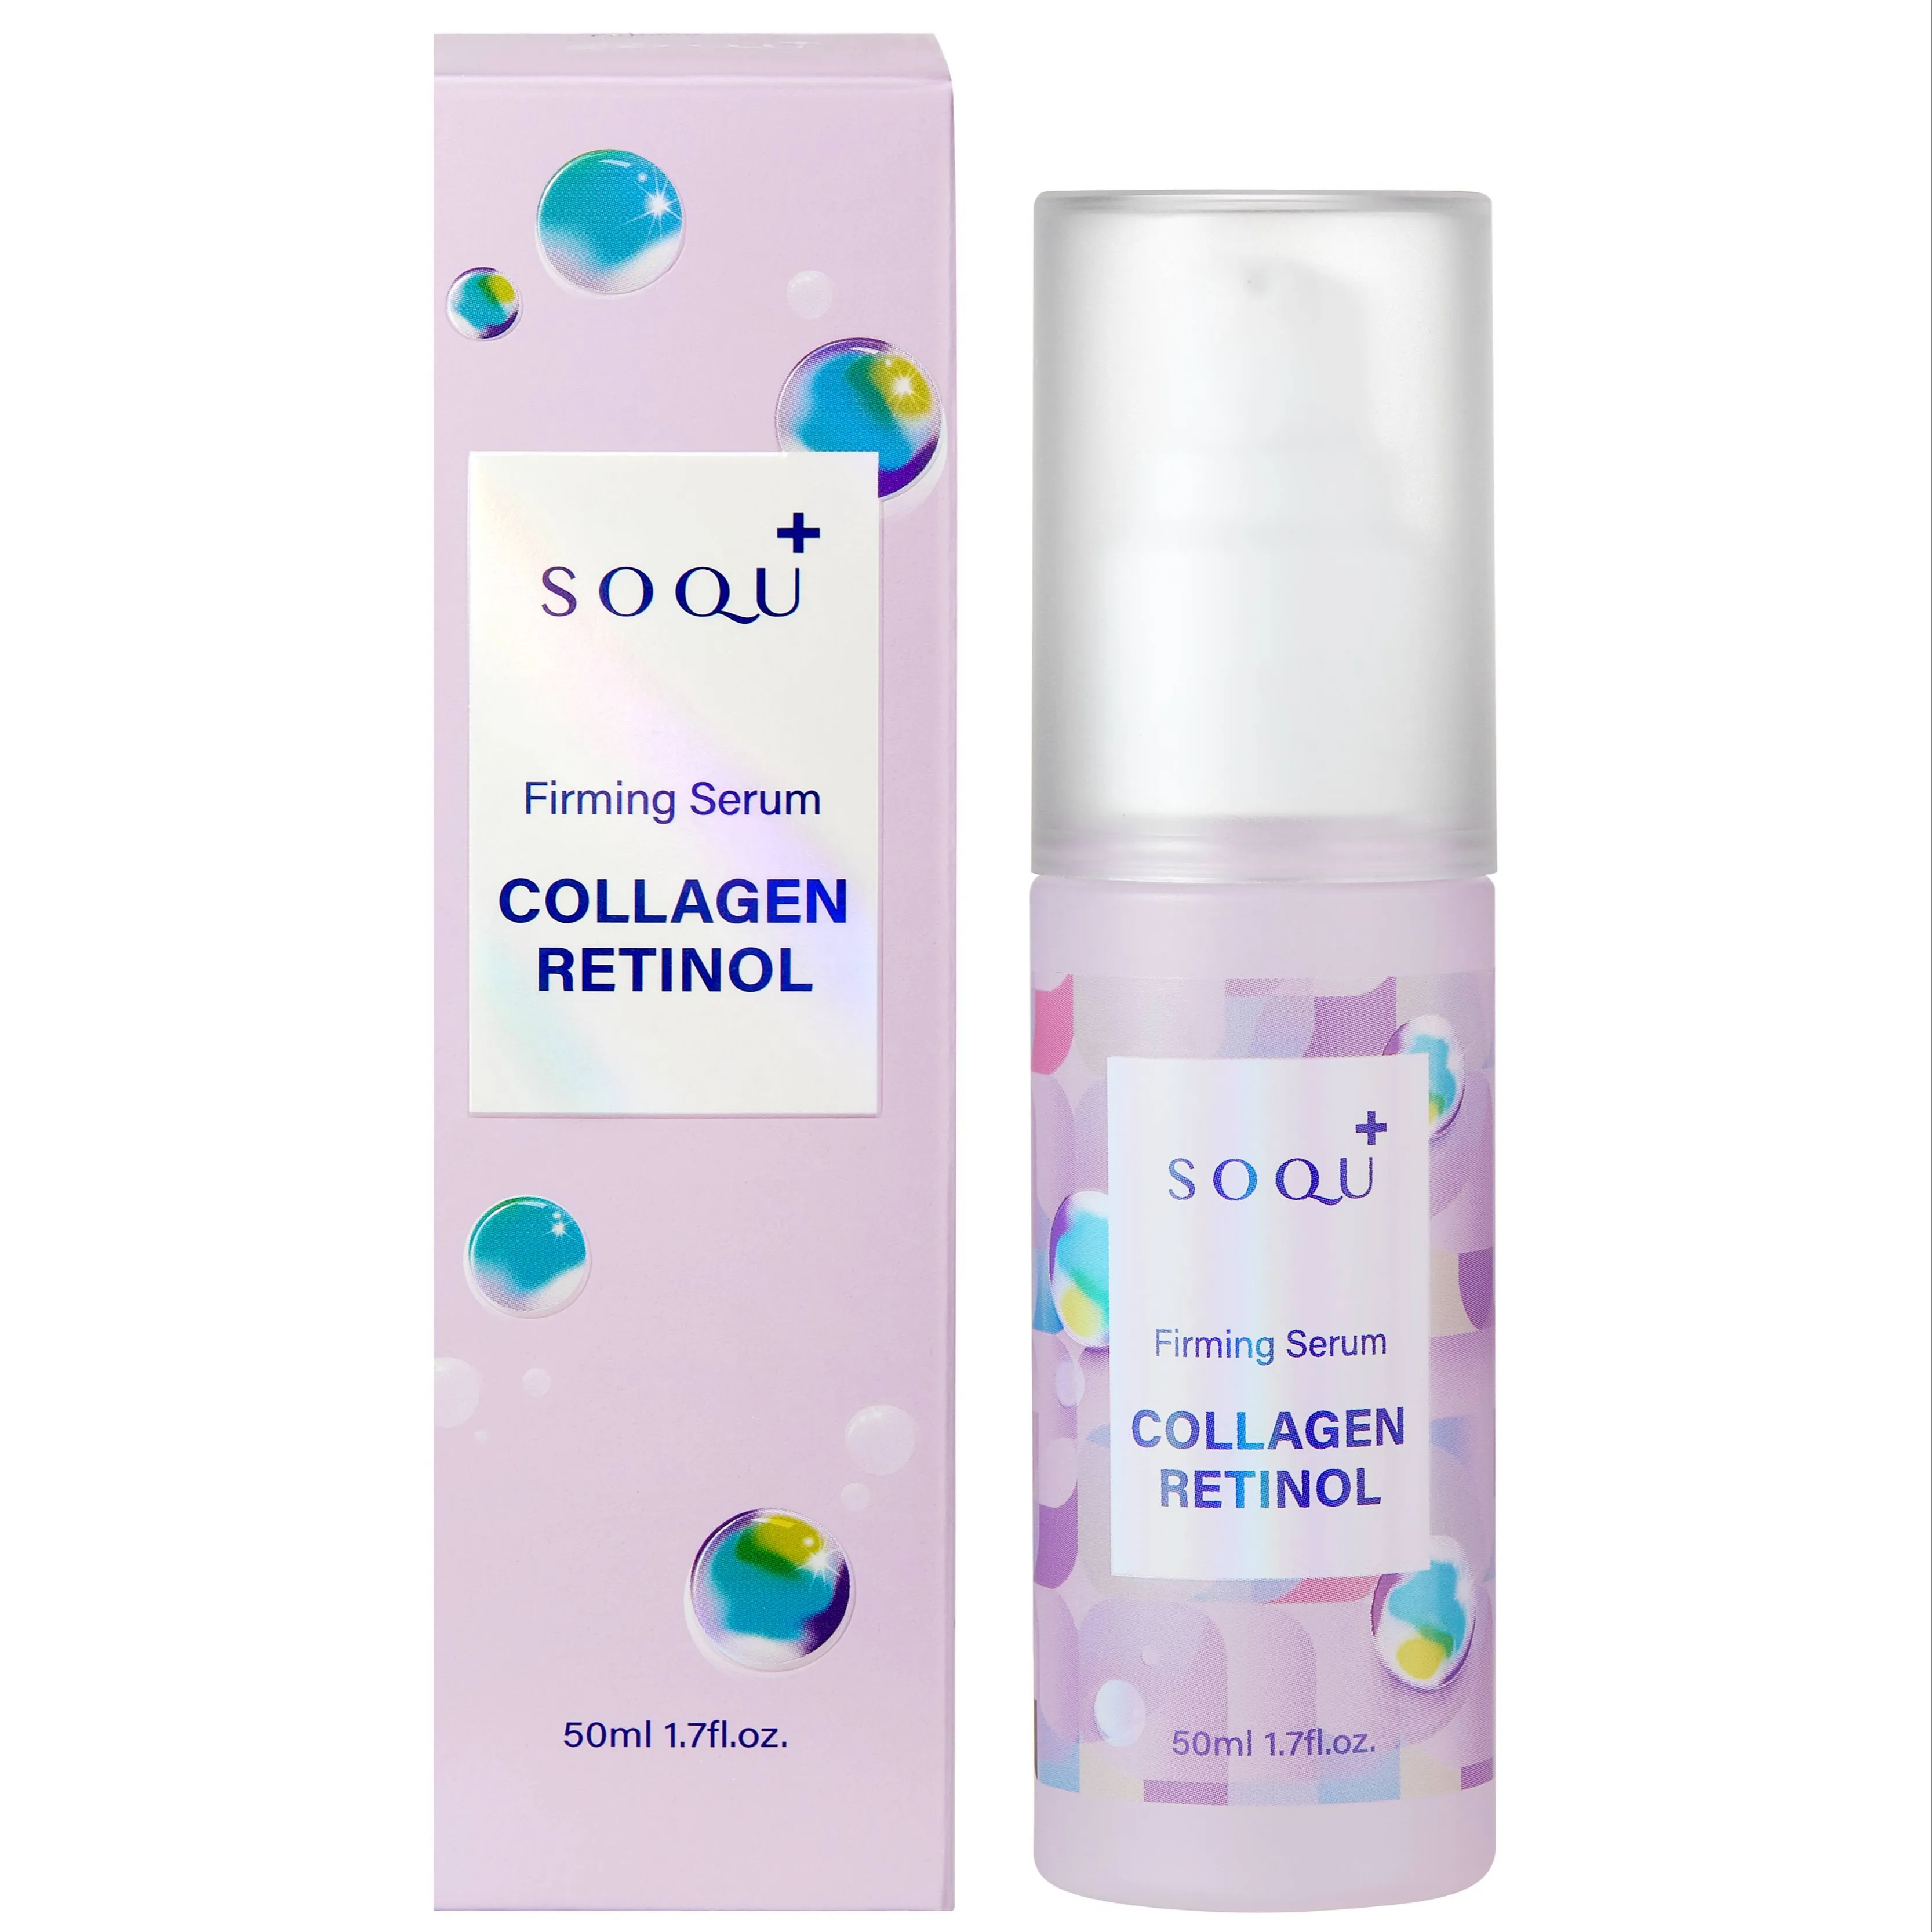 Kore No.1 kozmetik markası SOQU'sCOLLAGEN RETINOL sıkılaştırıcı Serum kollajen serum sıkılaştırıcı özü skintone geliştirici